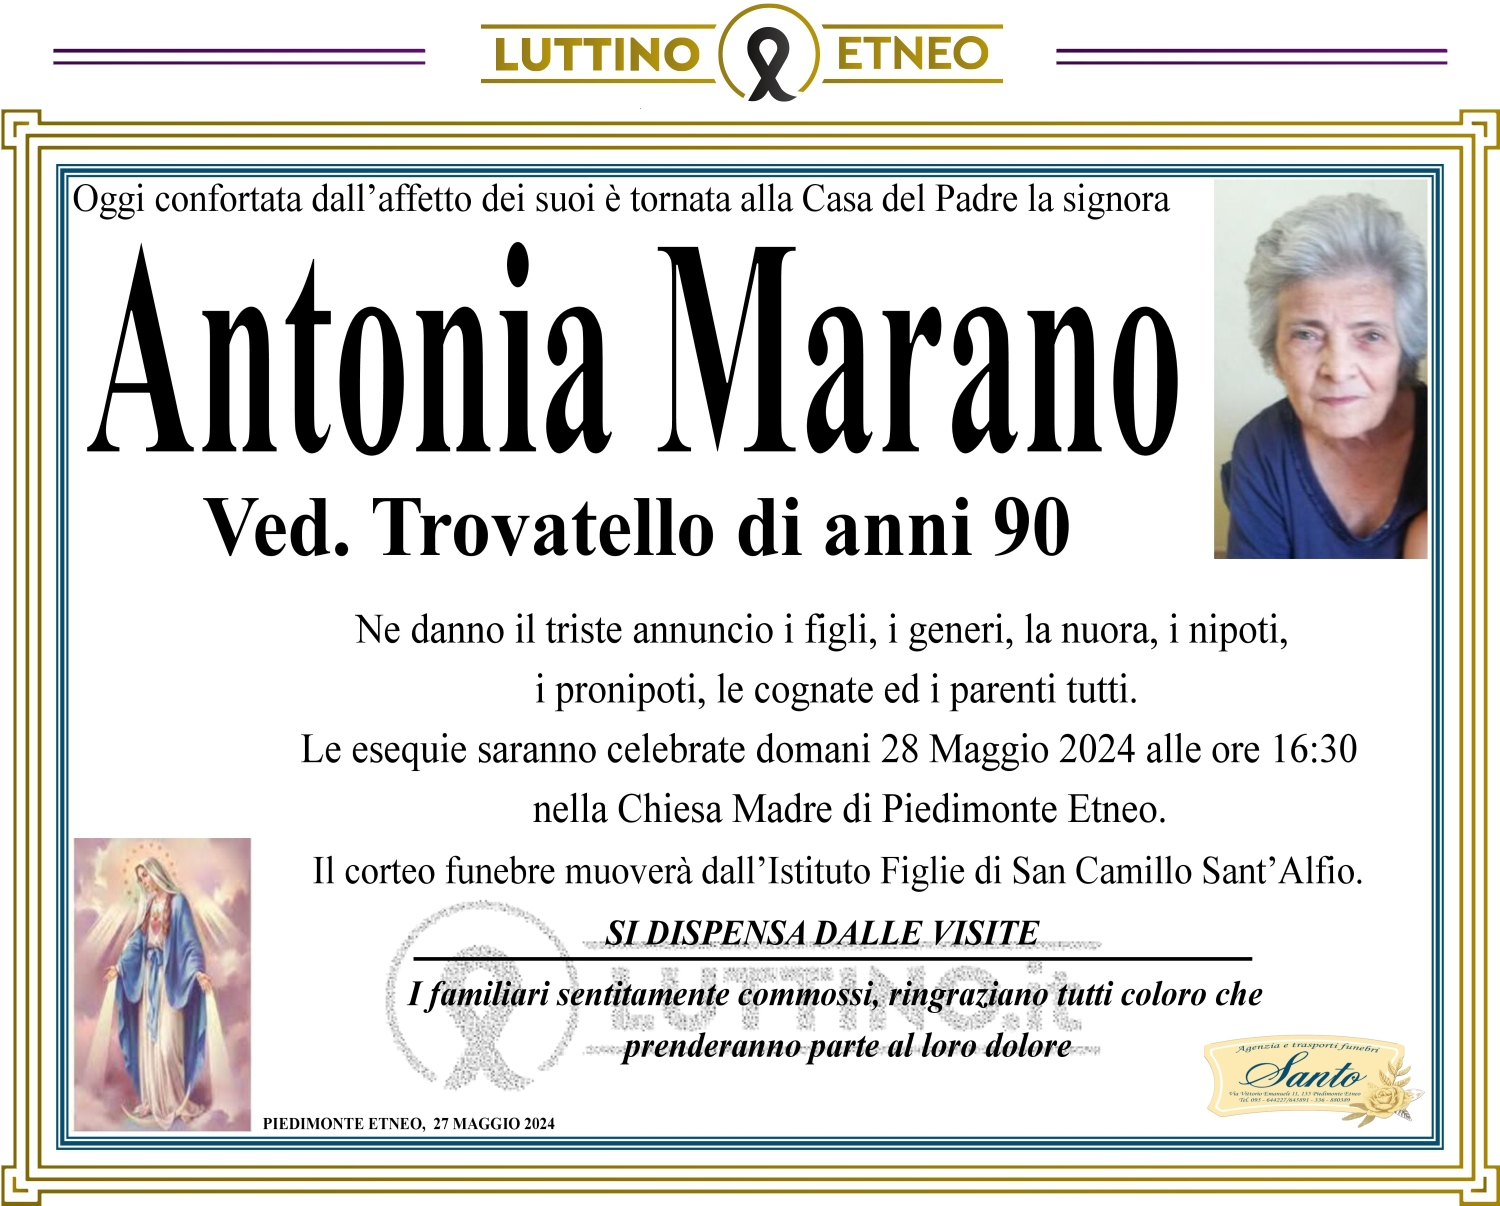 Antonia Marano